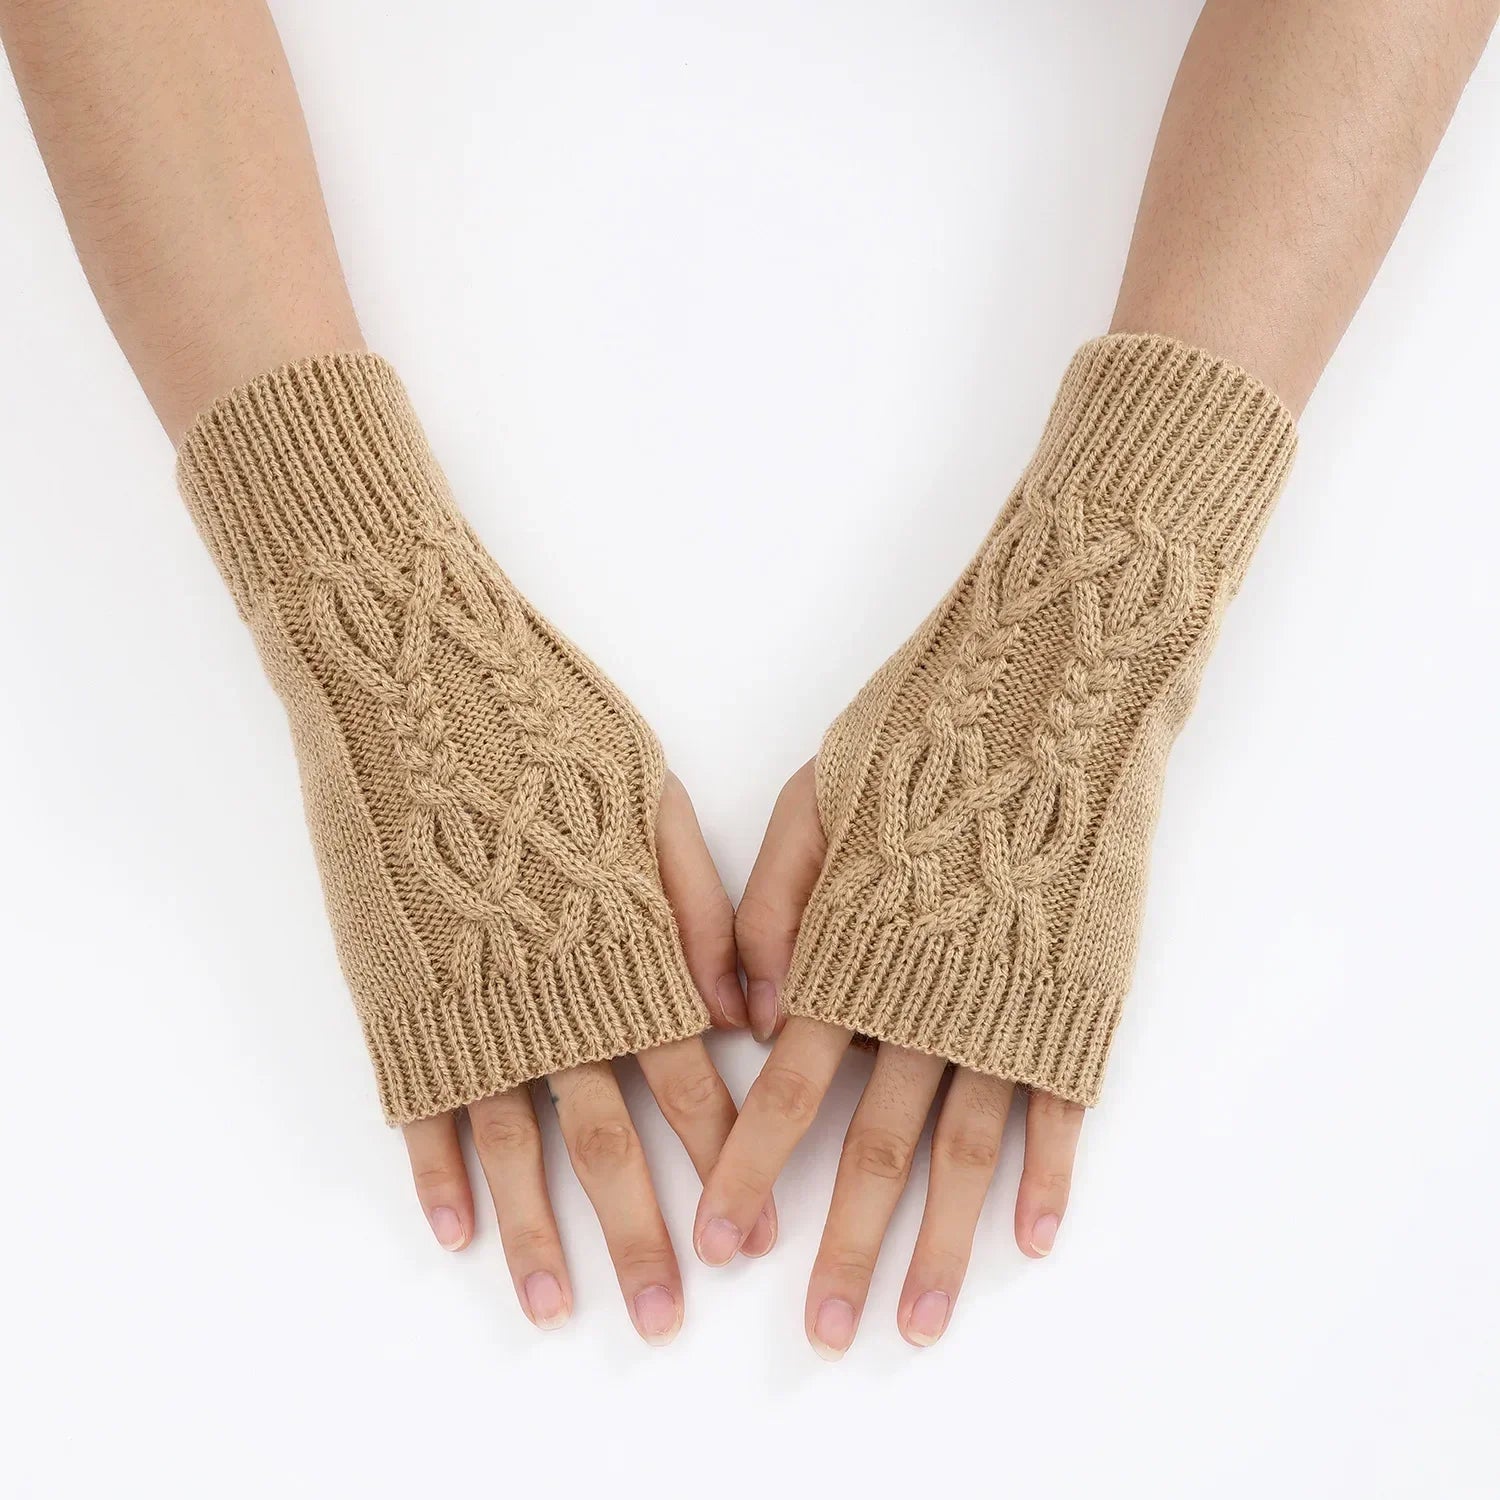 Women Winter Fingerless Gloves Warm Soft Wool Knitted Mittens Elegant Wrist Arm Hand Half Finger Elastic Short Gloves-Dollar Bargains Online Shopping Australia